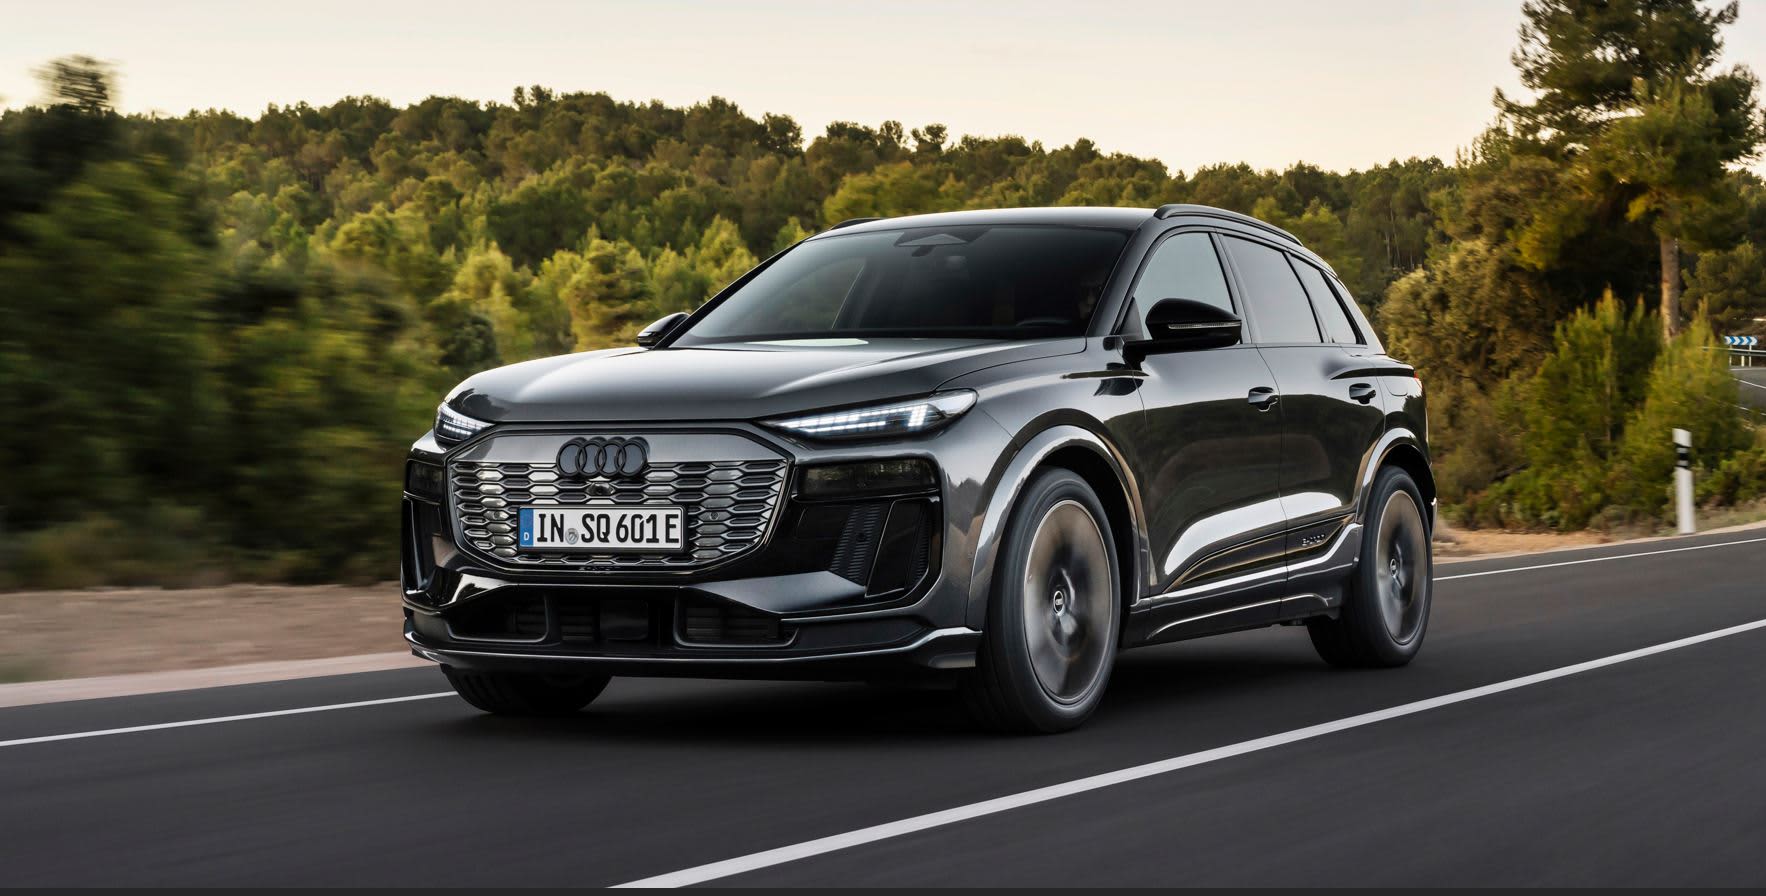 Audi ha presentato il SUV 100% elettrico Q6 e-tron, la prima auto elettrica della prossima generazione